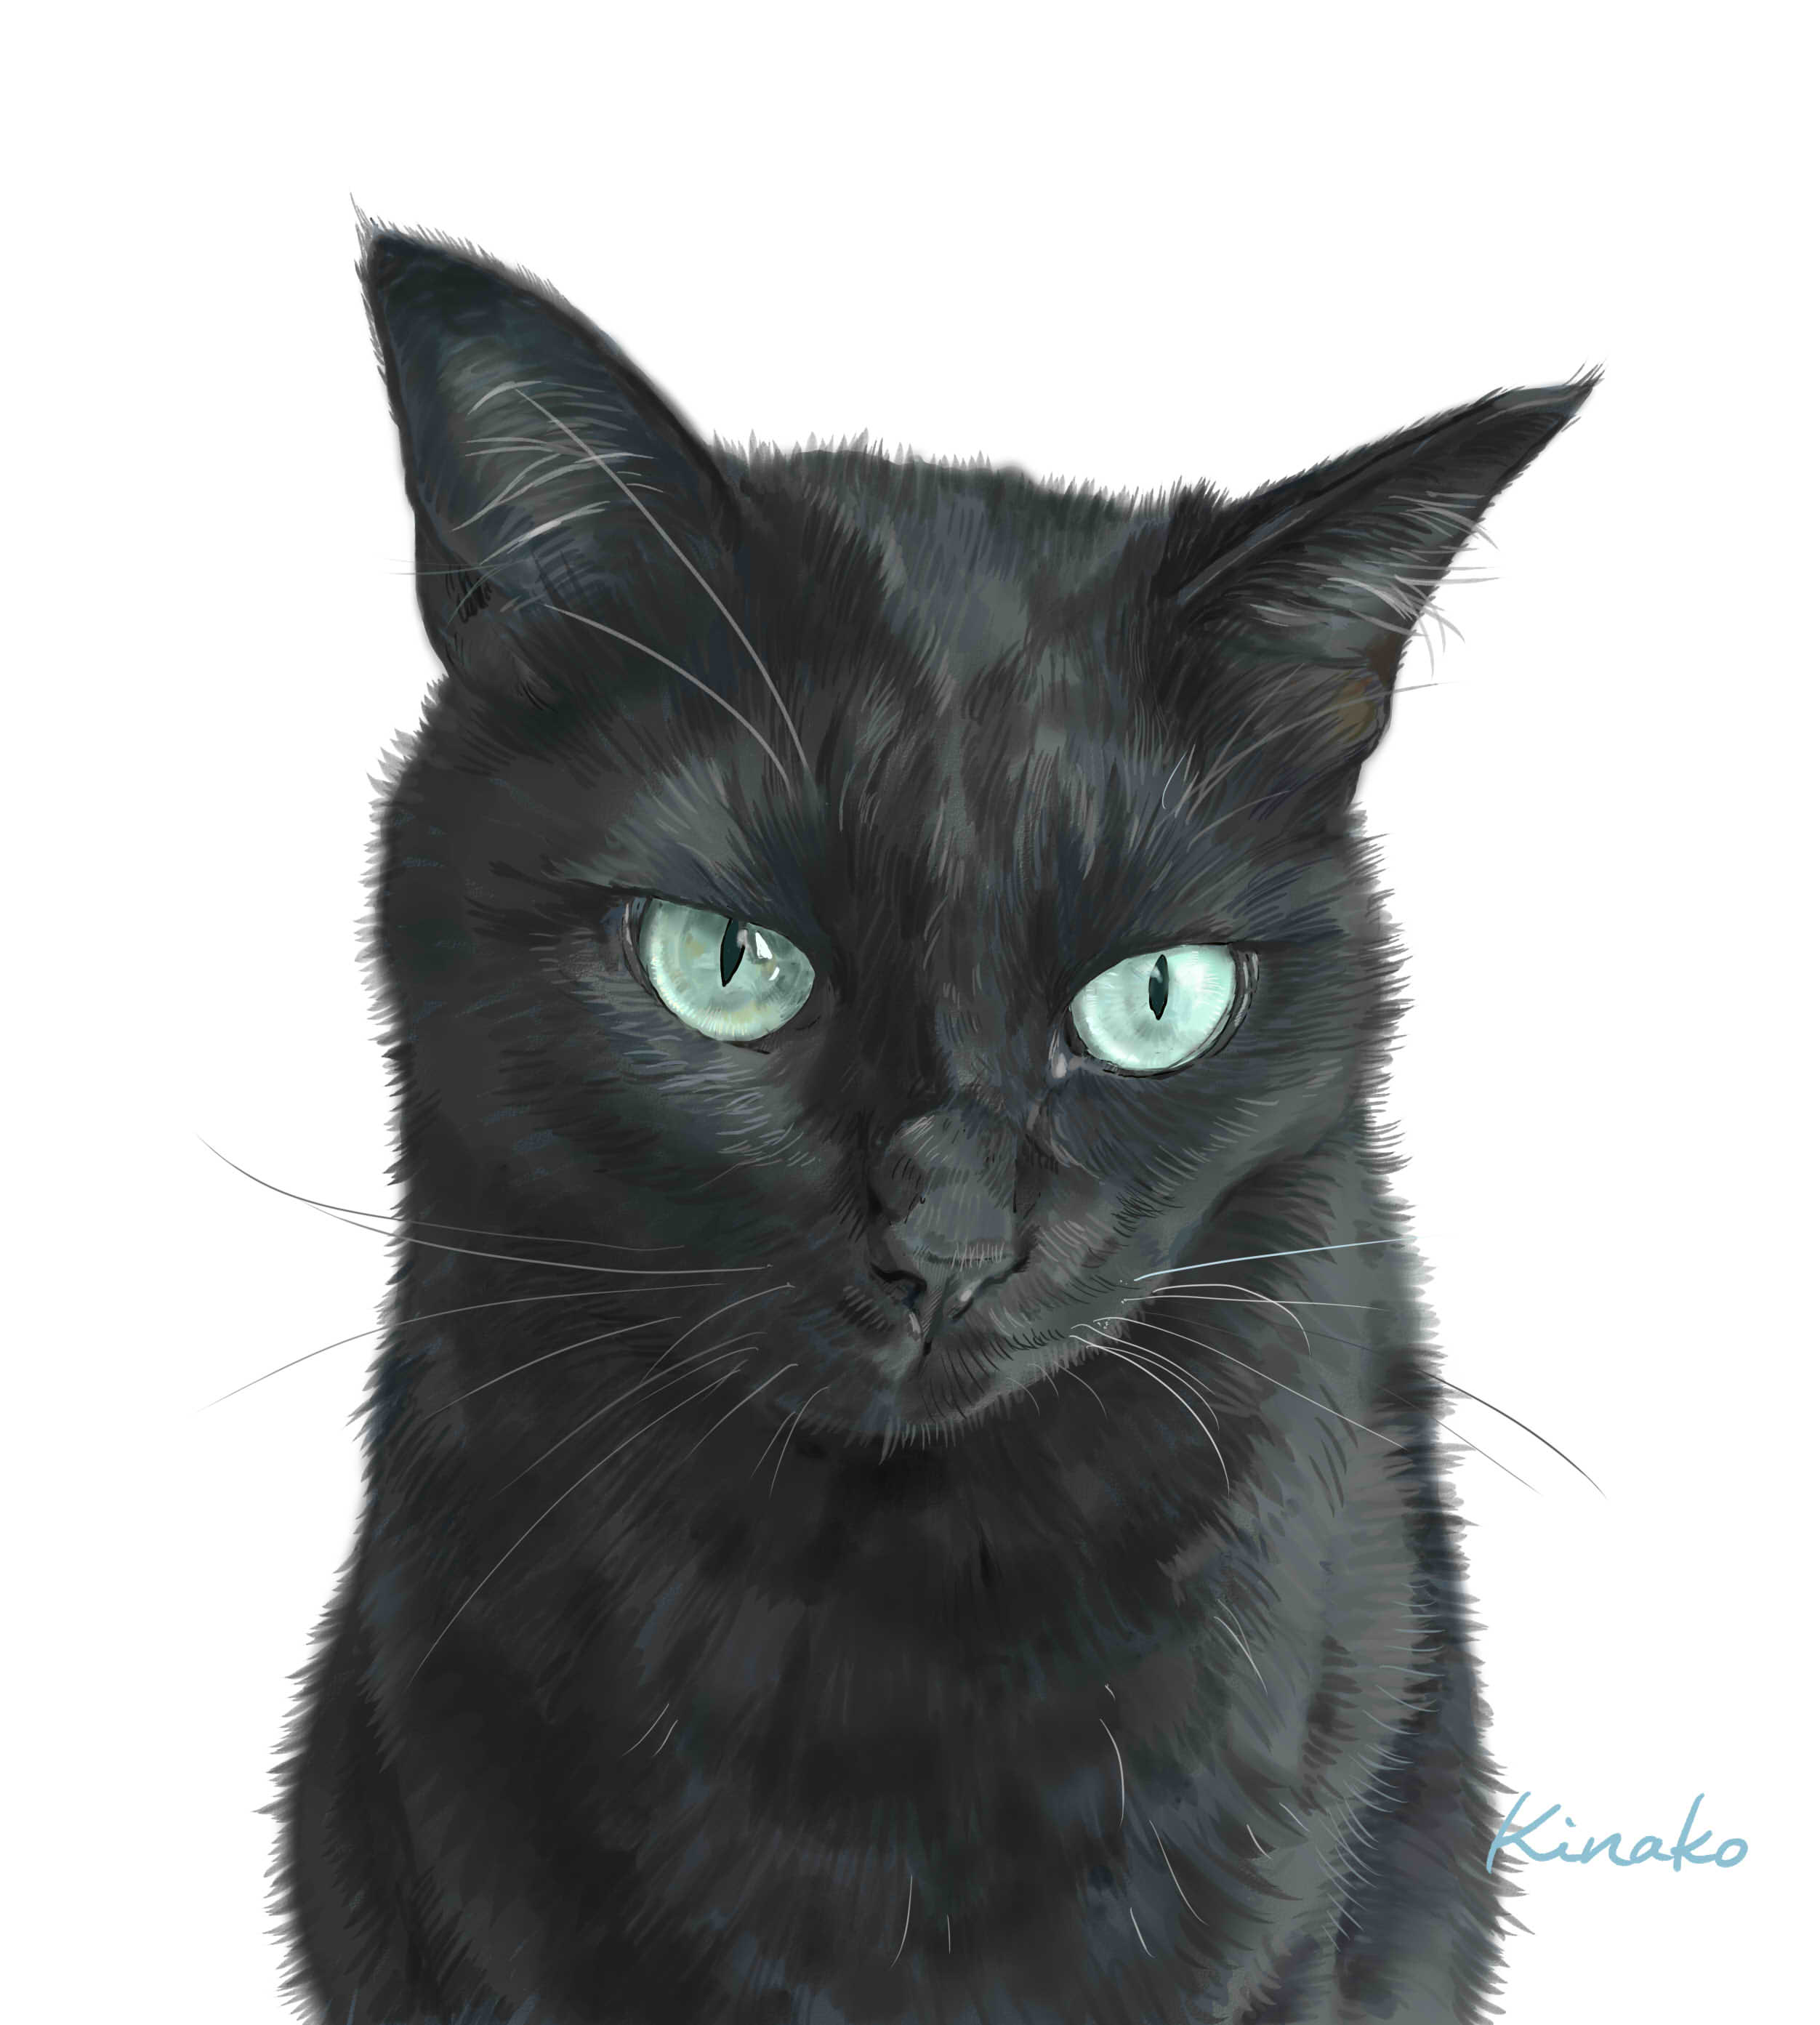 きなこ 猫の絵を描いています 黒猫ちゃん 完成しました あっきぃさんの小春ちゃんです 18年8月に 白血病で天国に旅立ってしまいました まだ3歳でした 先日描いた 一緒に過ごした黒猫の健君と並べてみました イラストを含めて 3枚描いてい